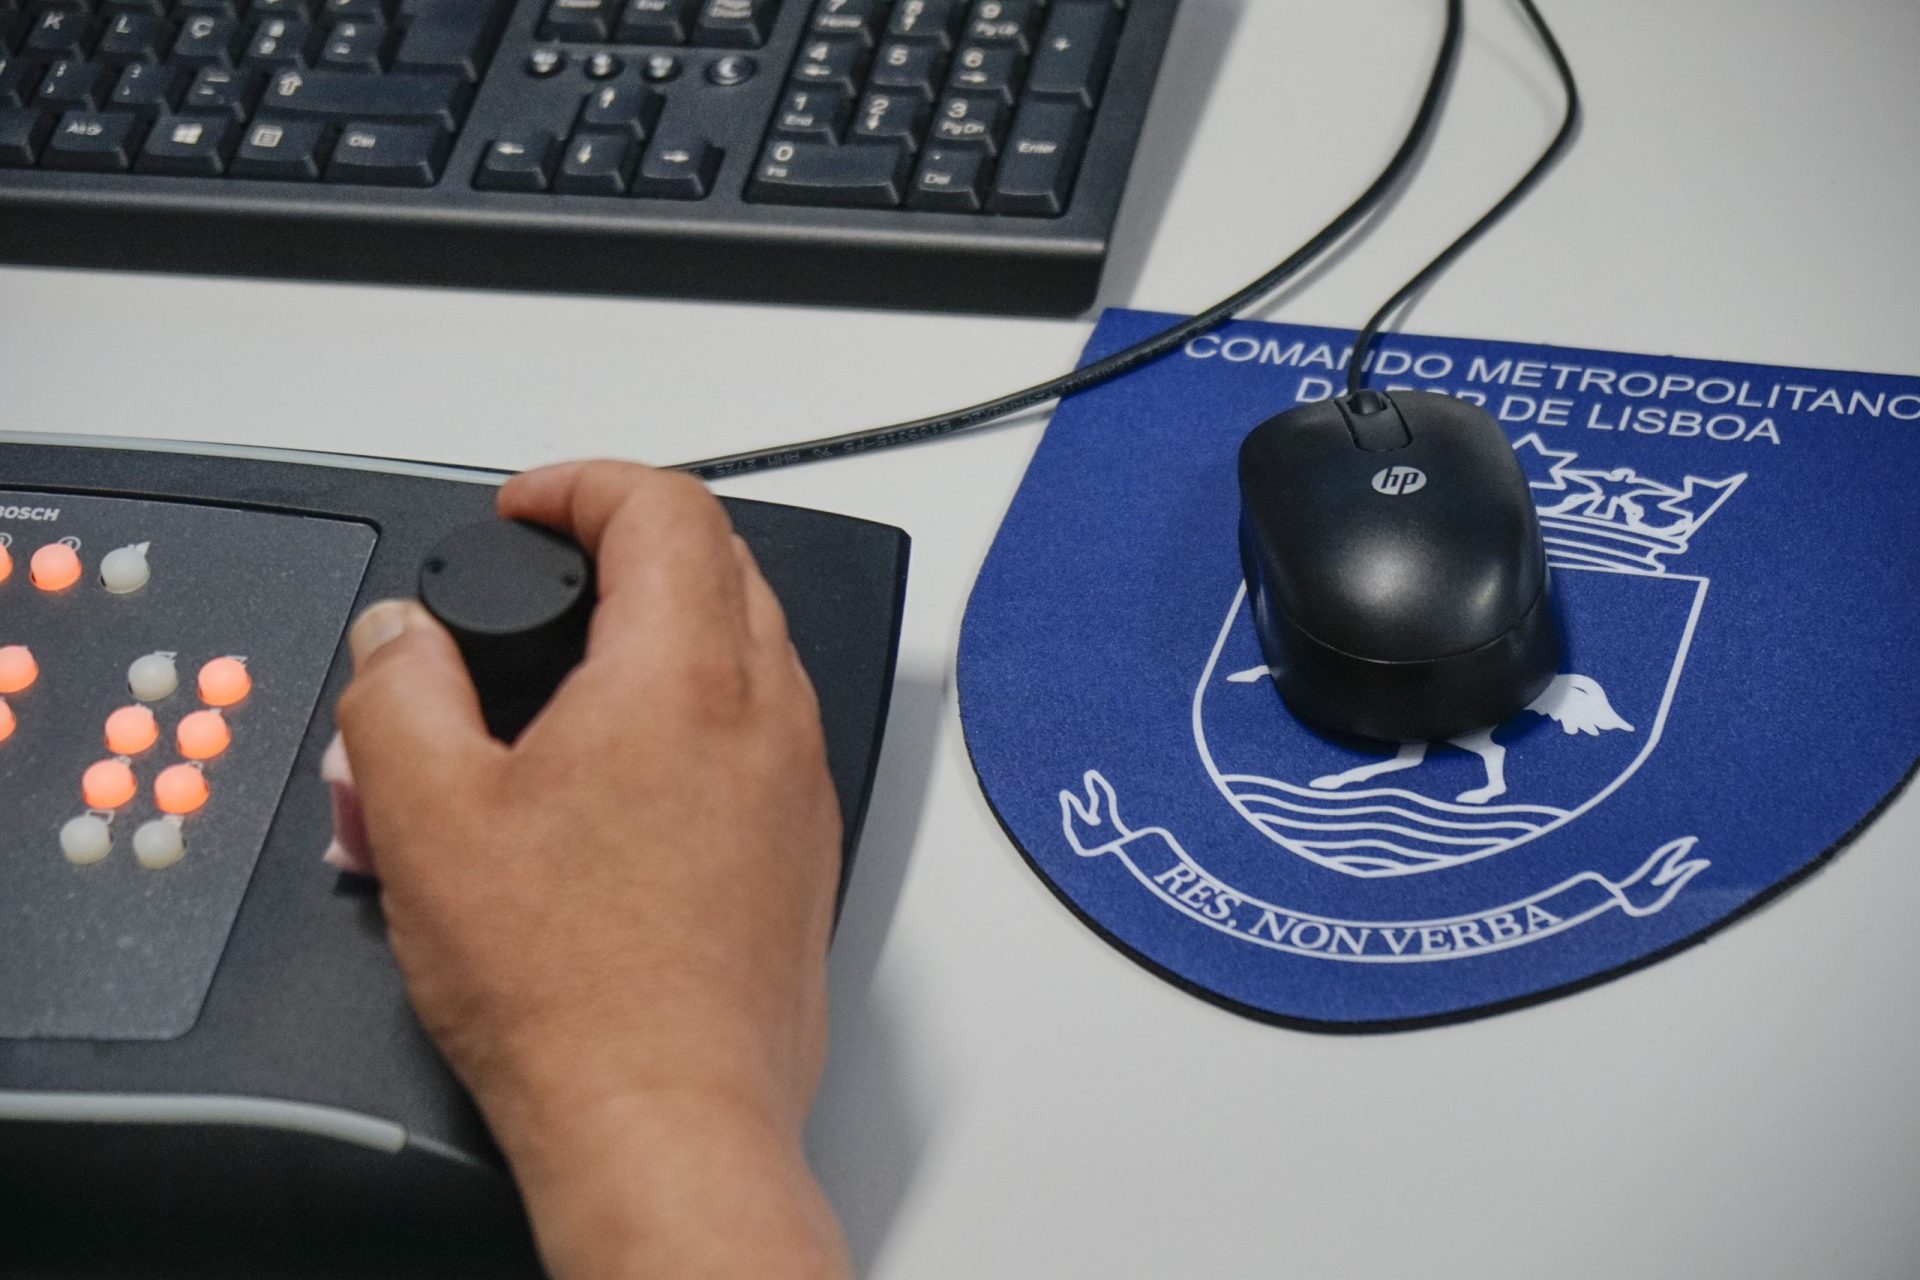 Governo autoriza instalação de 216 câmaras de vigilância em Lisboa